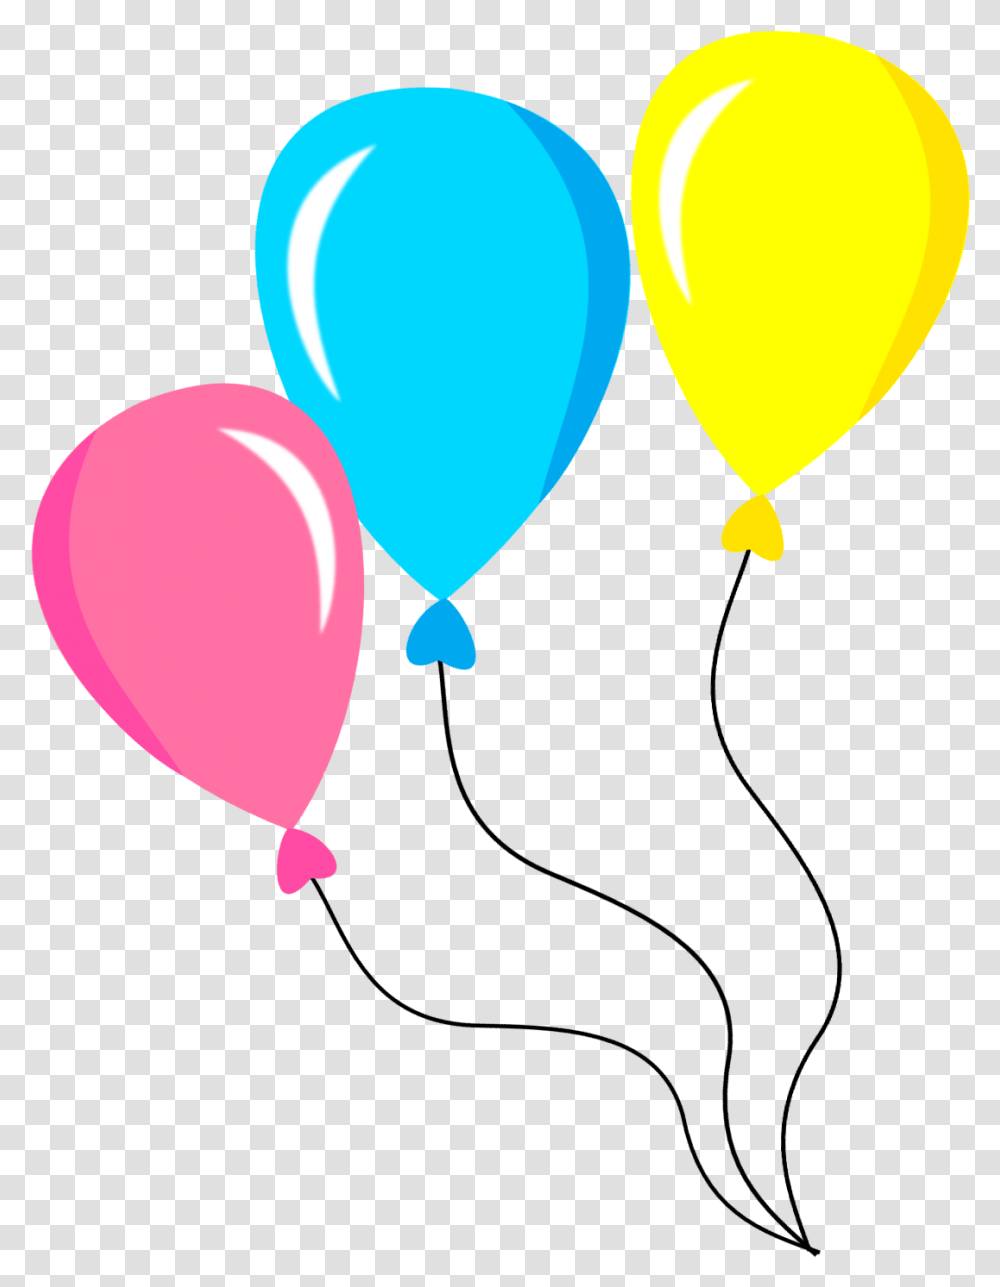 Balo De Festa Em Desenho, Balloon Transparent Png